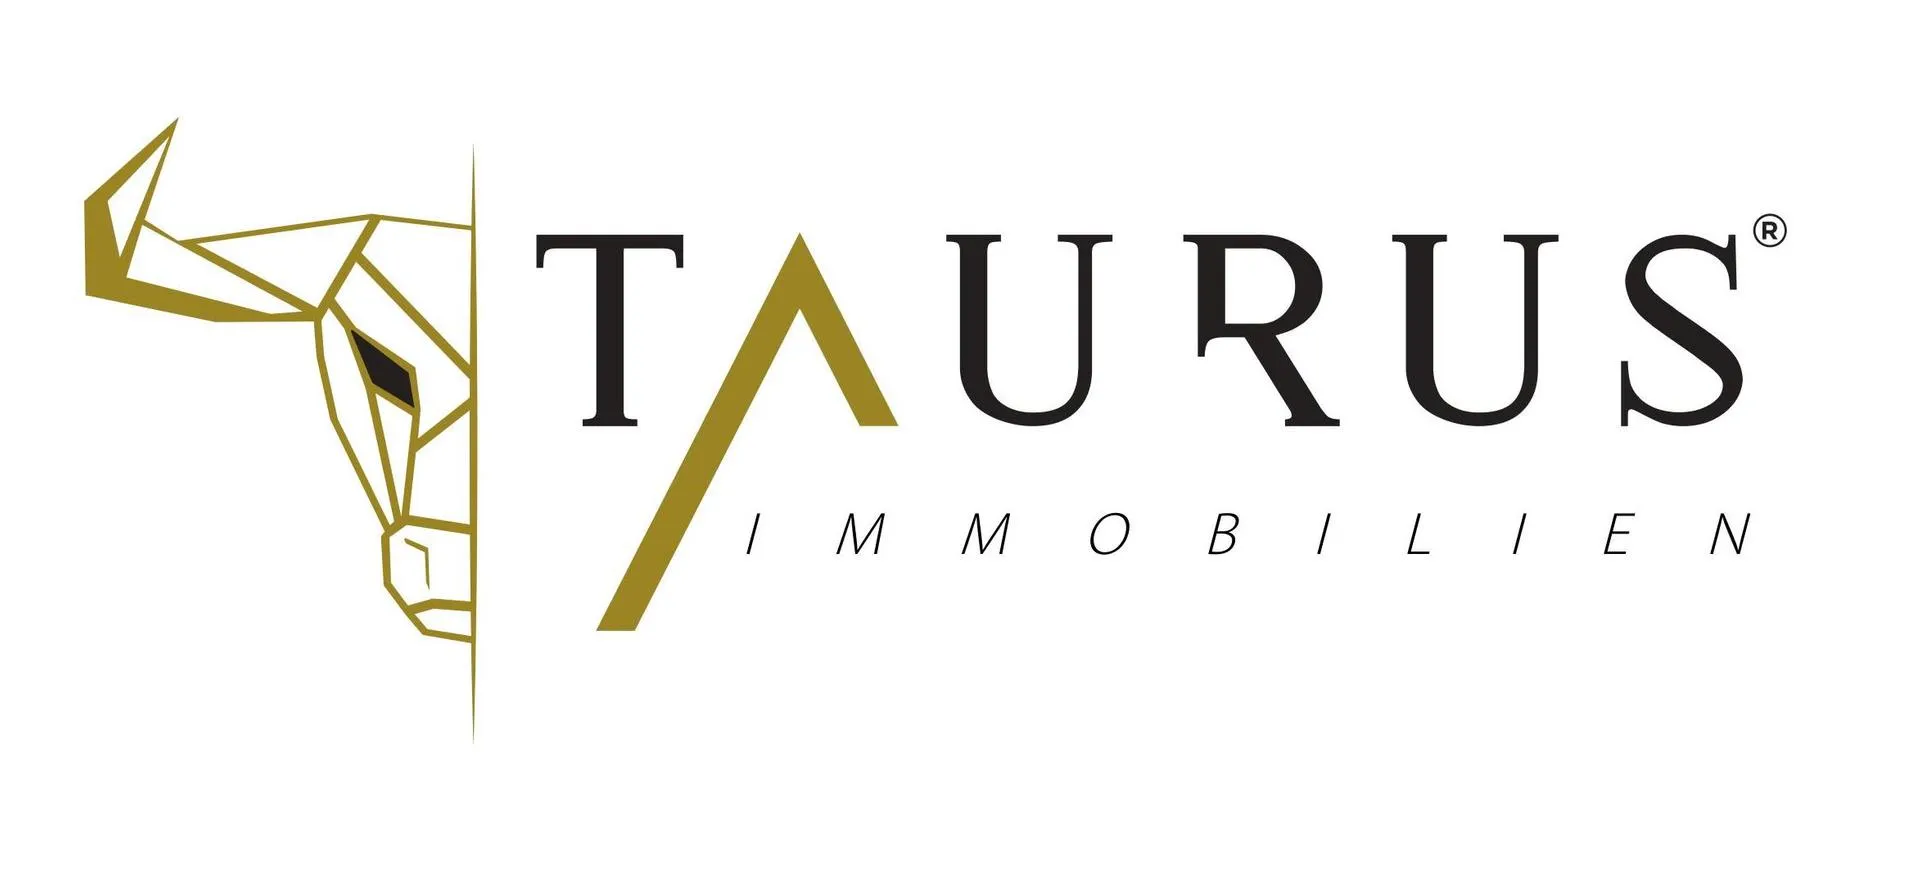 Makler IBBV Taurus GmbH logo